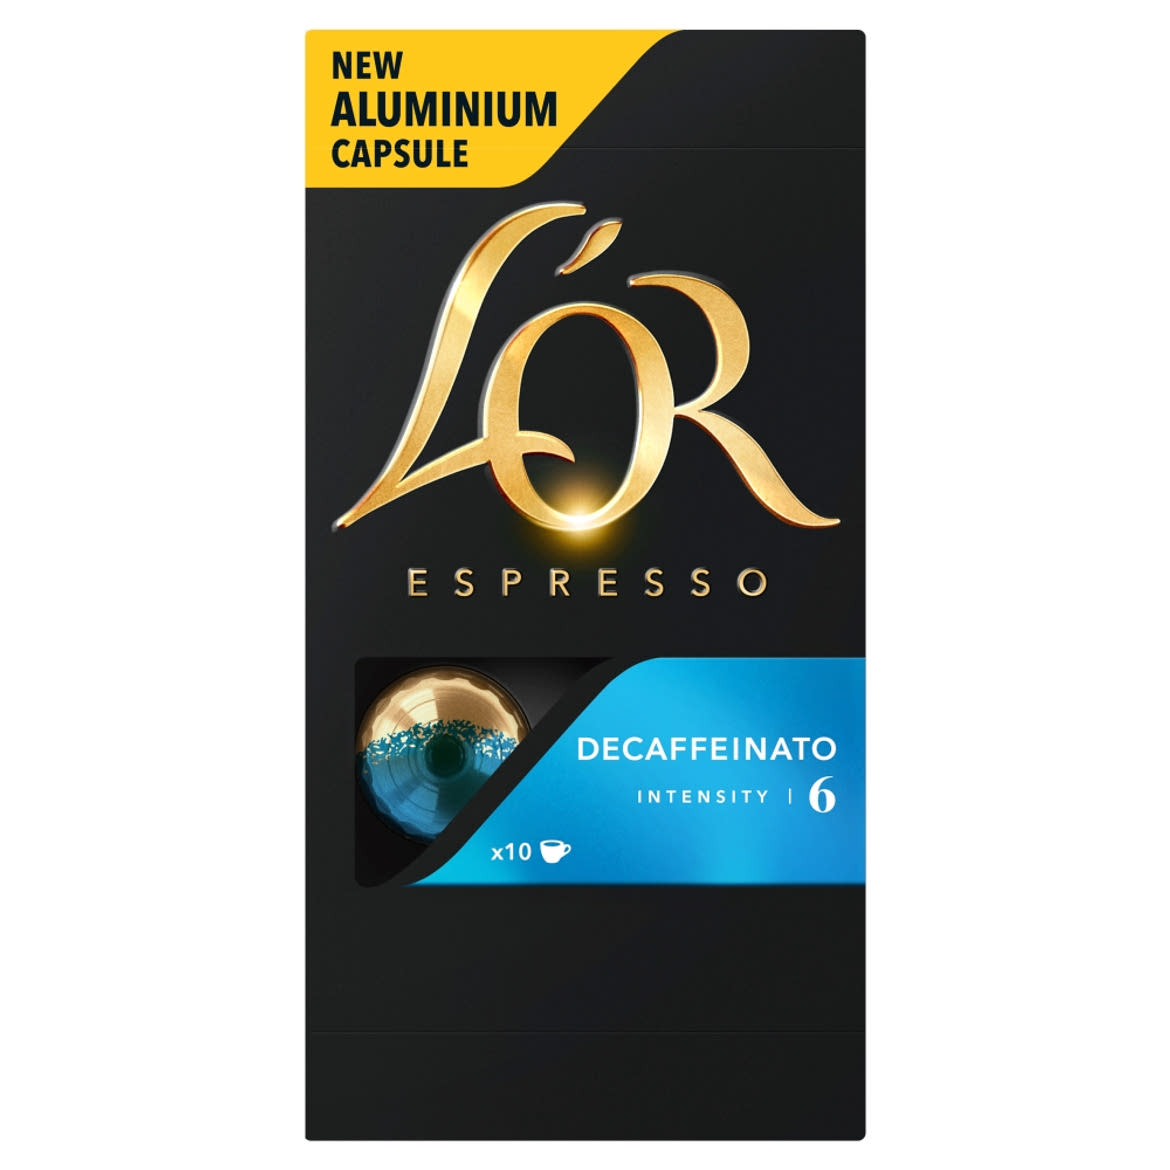 L'OR Espresso Decaffeinato koffeinmentes őrölt-pörkölt kávé kapszulában